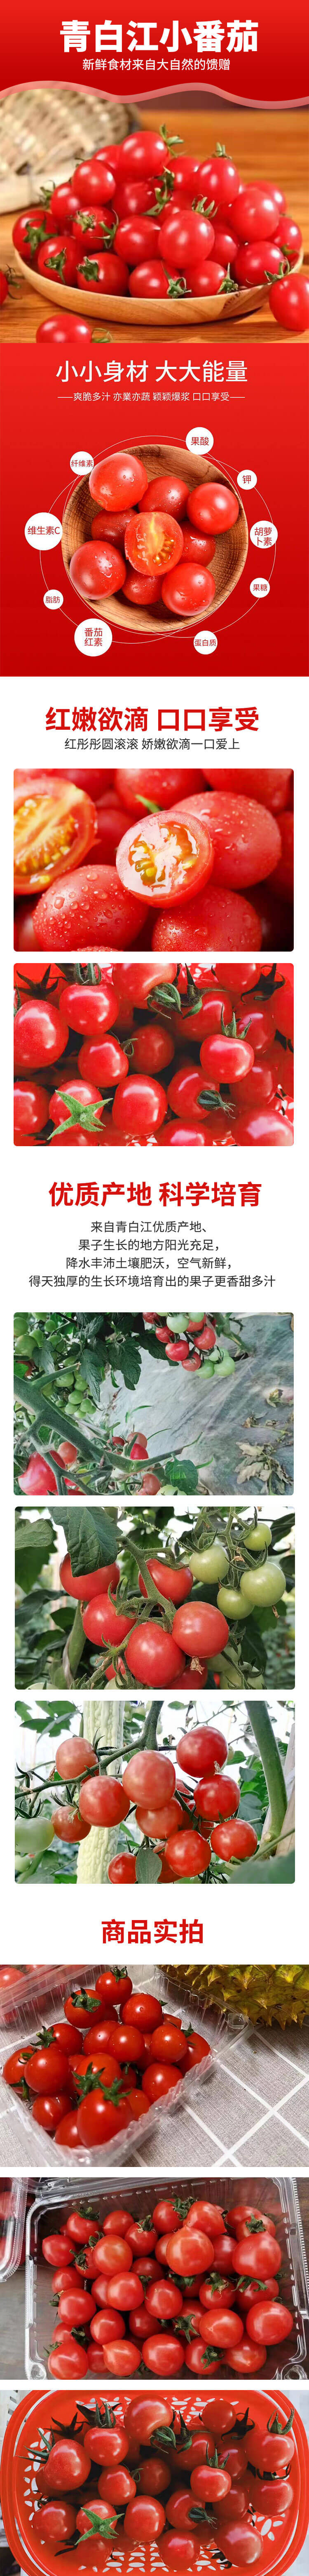 农家自产 【工会会员】成都青白江小番茄